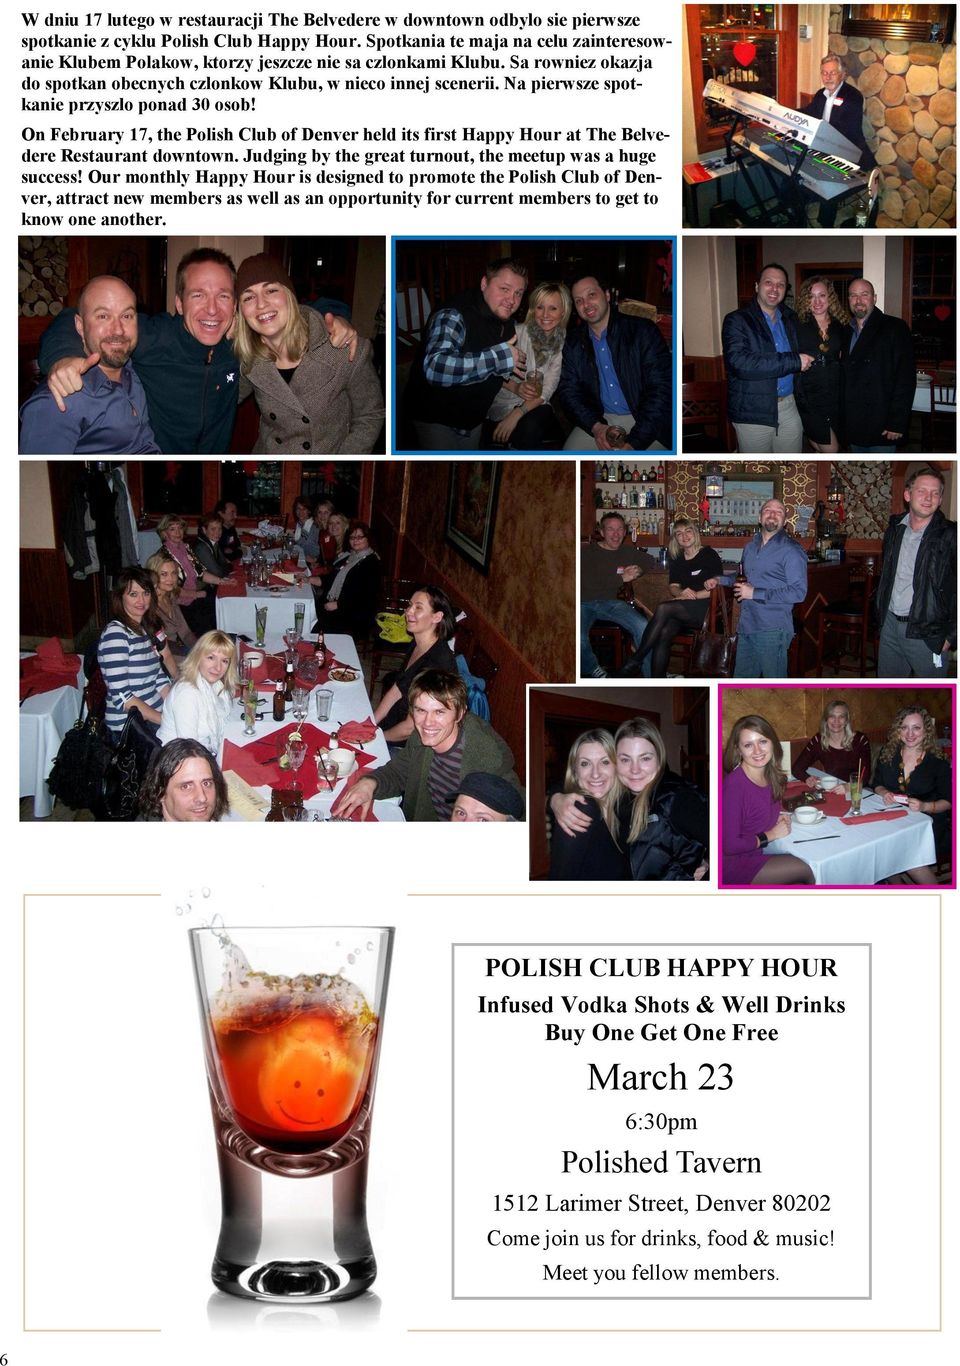 Na pierwsze spotkanie przyszlo ponad 30 osob! On February 17, the Polish Club of Denver held its first Happy Hour at The Belvedere Restaurant downtown.